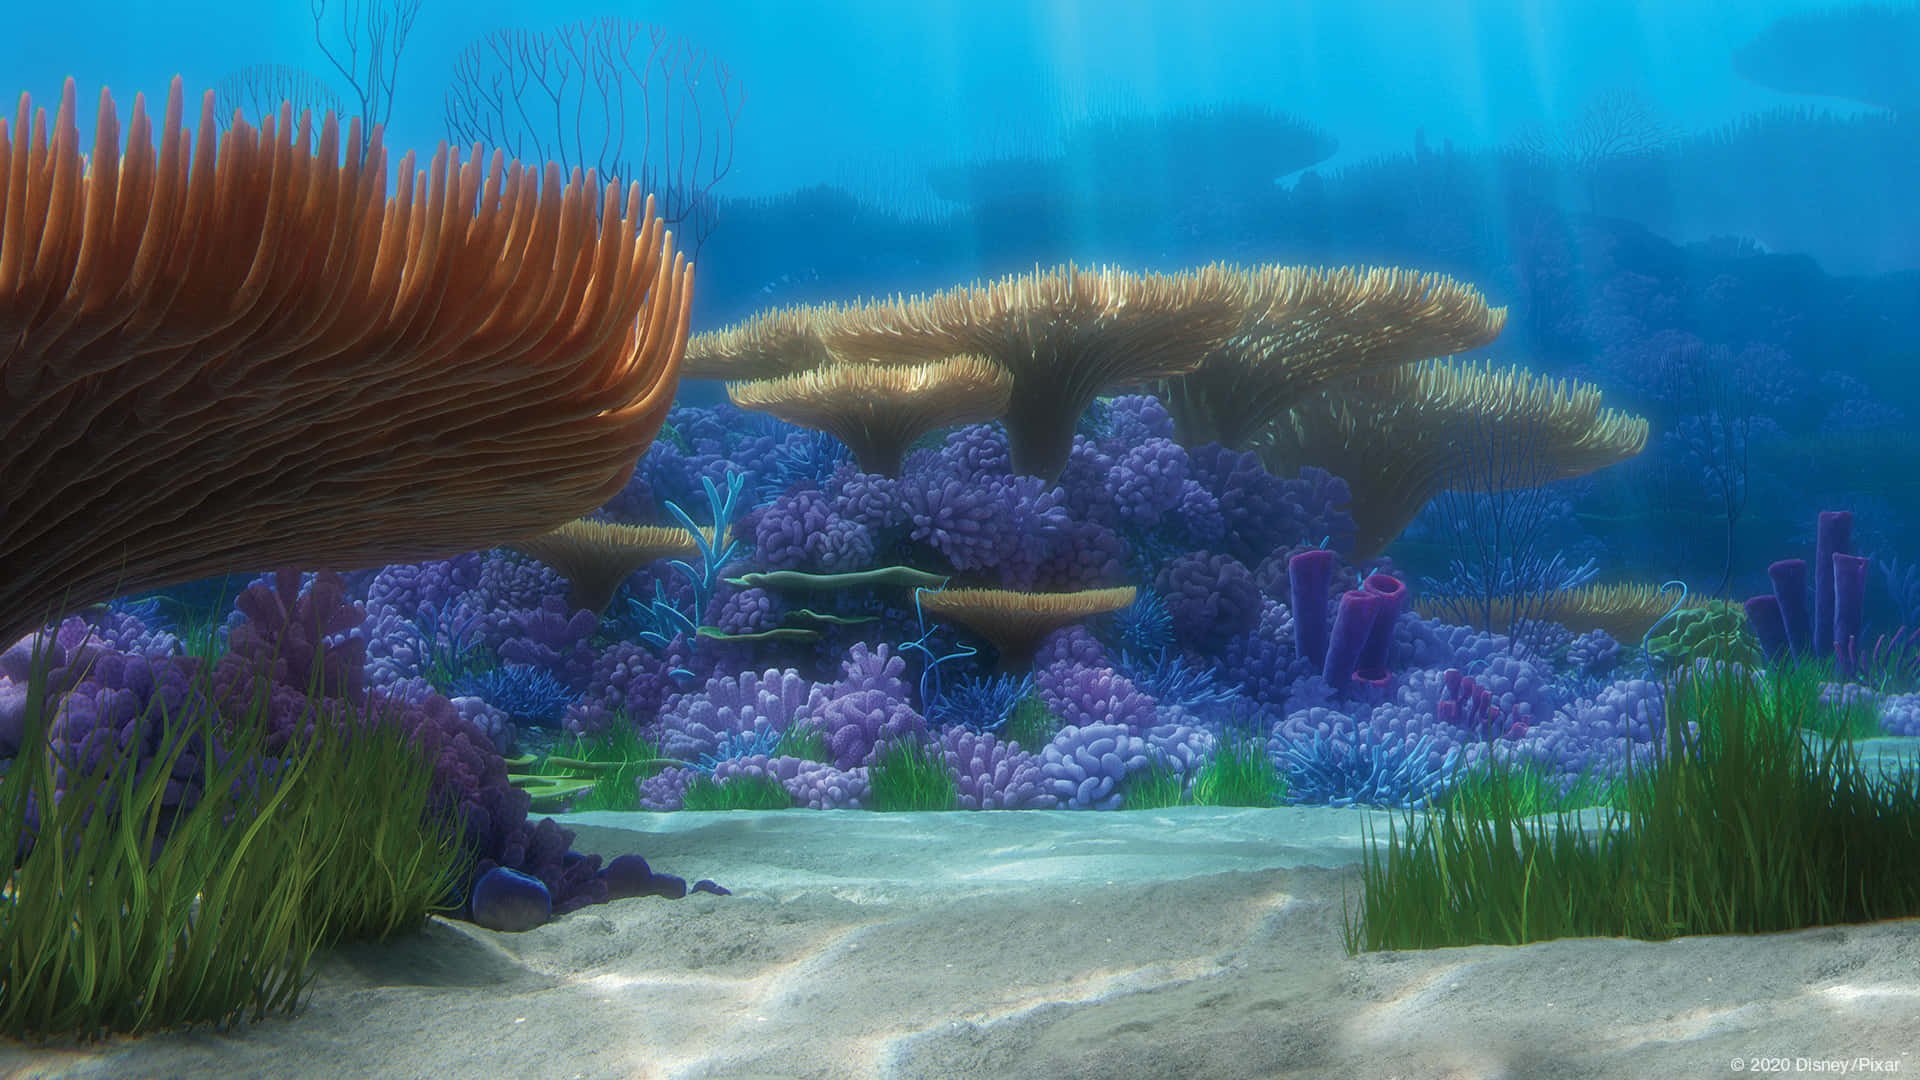 Enskärmdump Av En Undervattensscen Med Koraller Och Växter